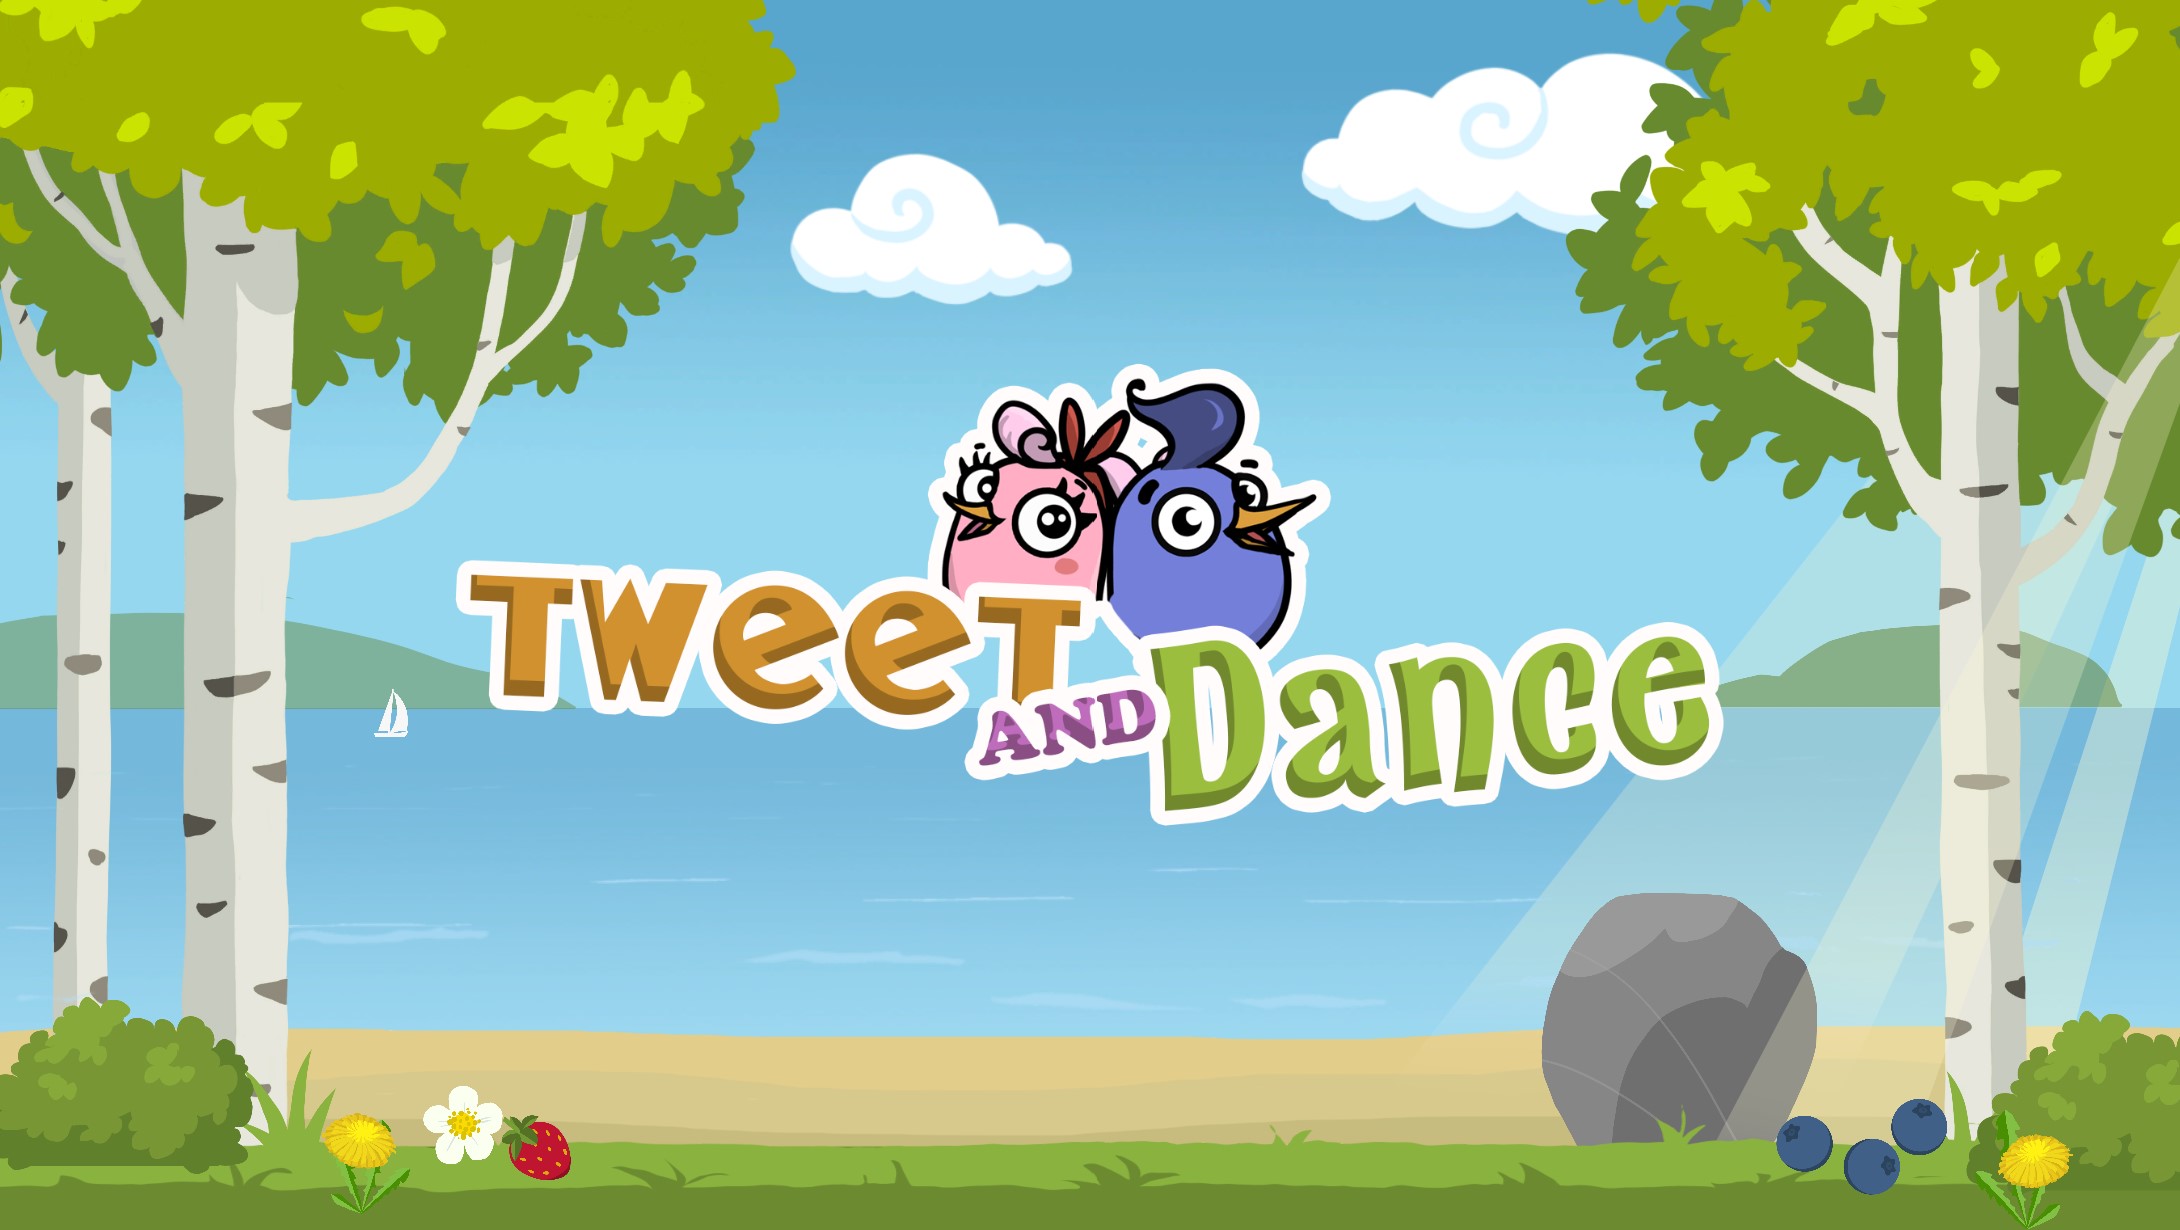 Tweet And Dance